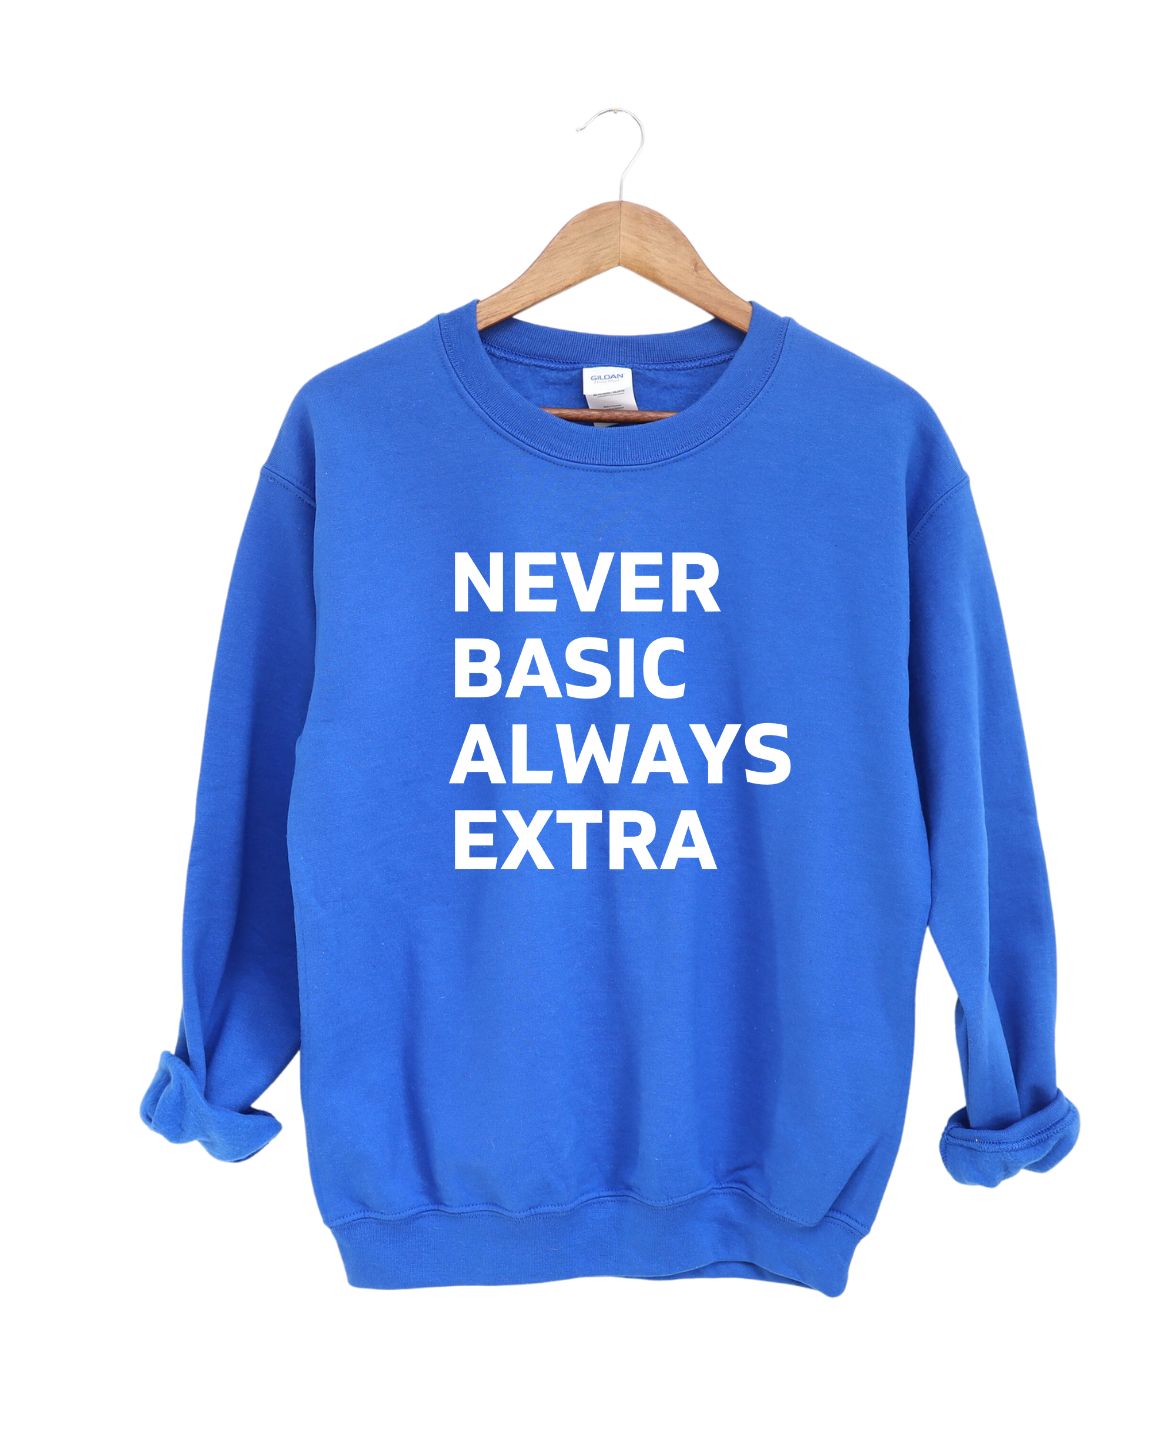 Never Basic Always Extra Sweatshirt